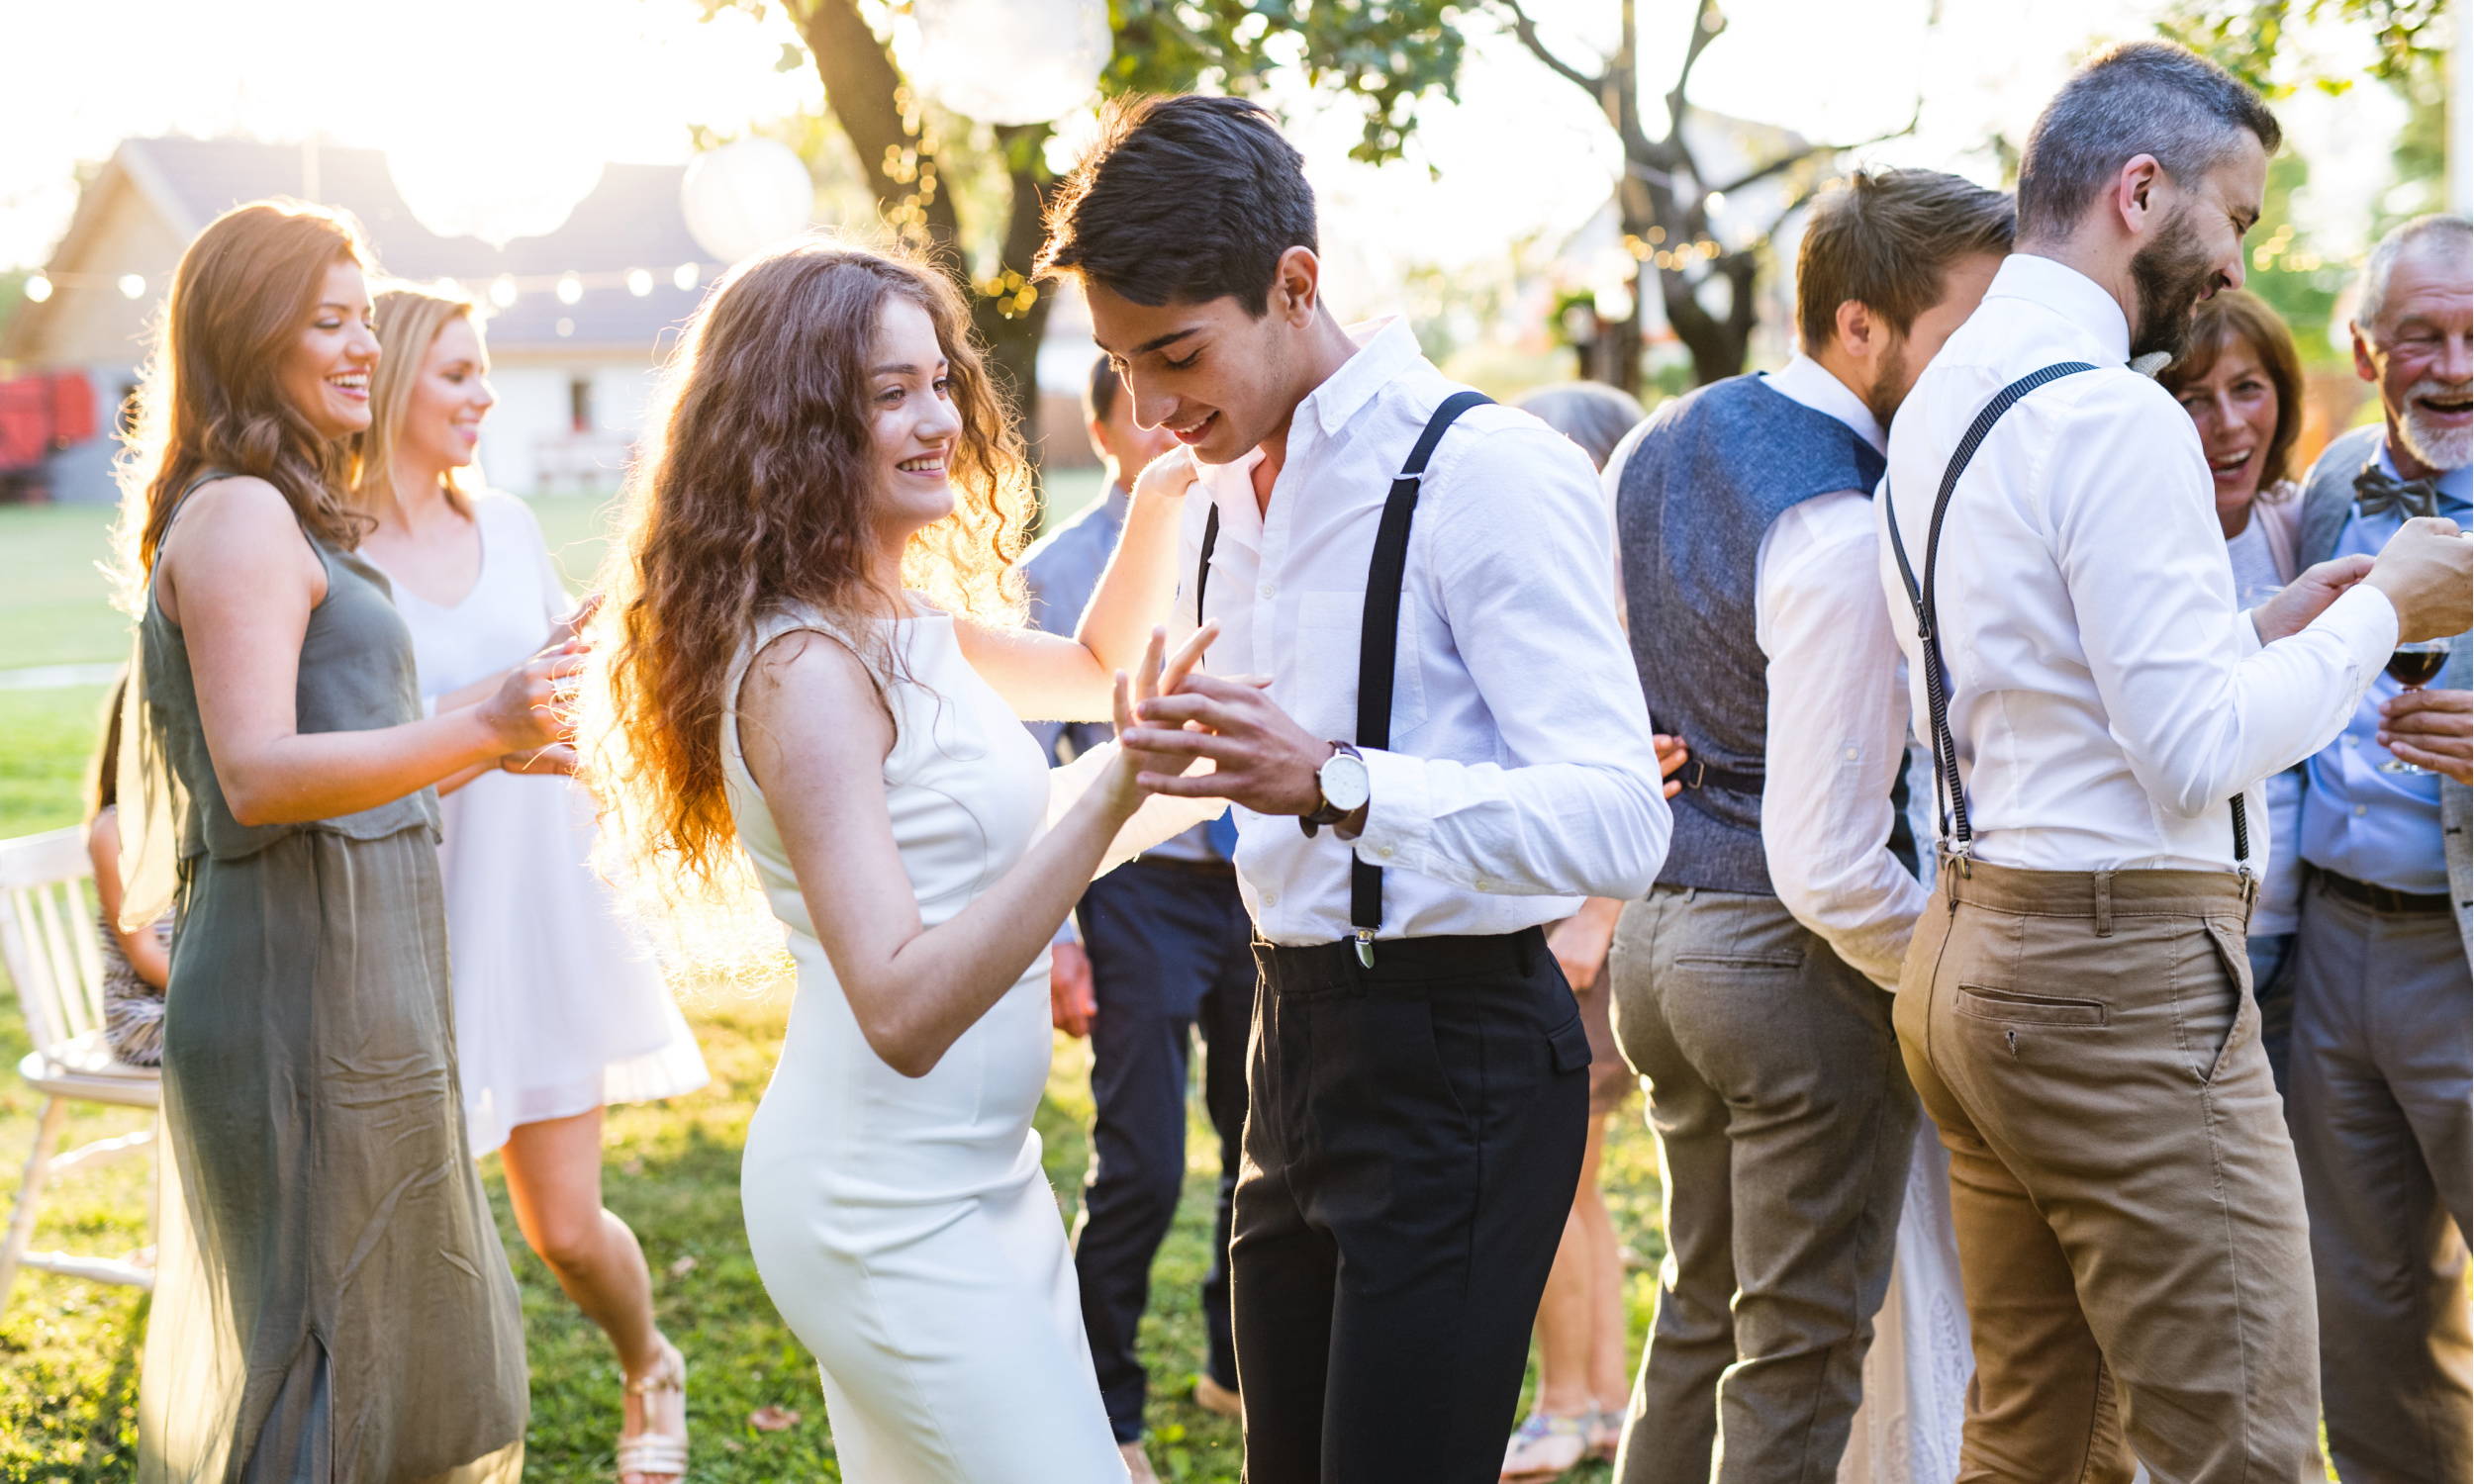 Guests Dancing at Wedding